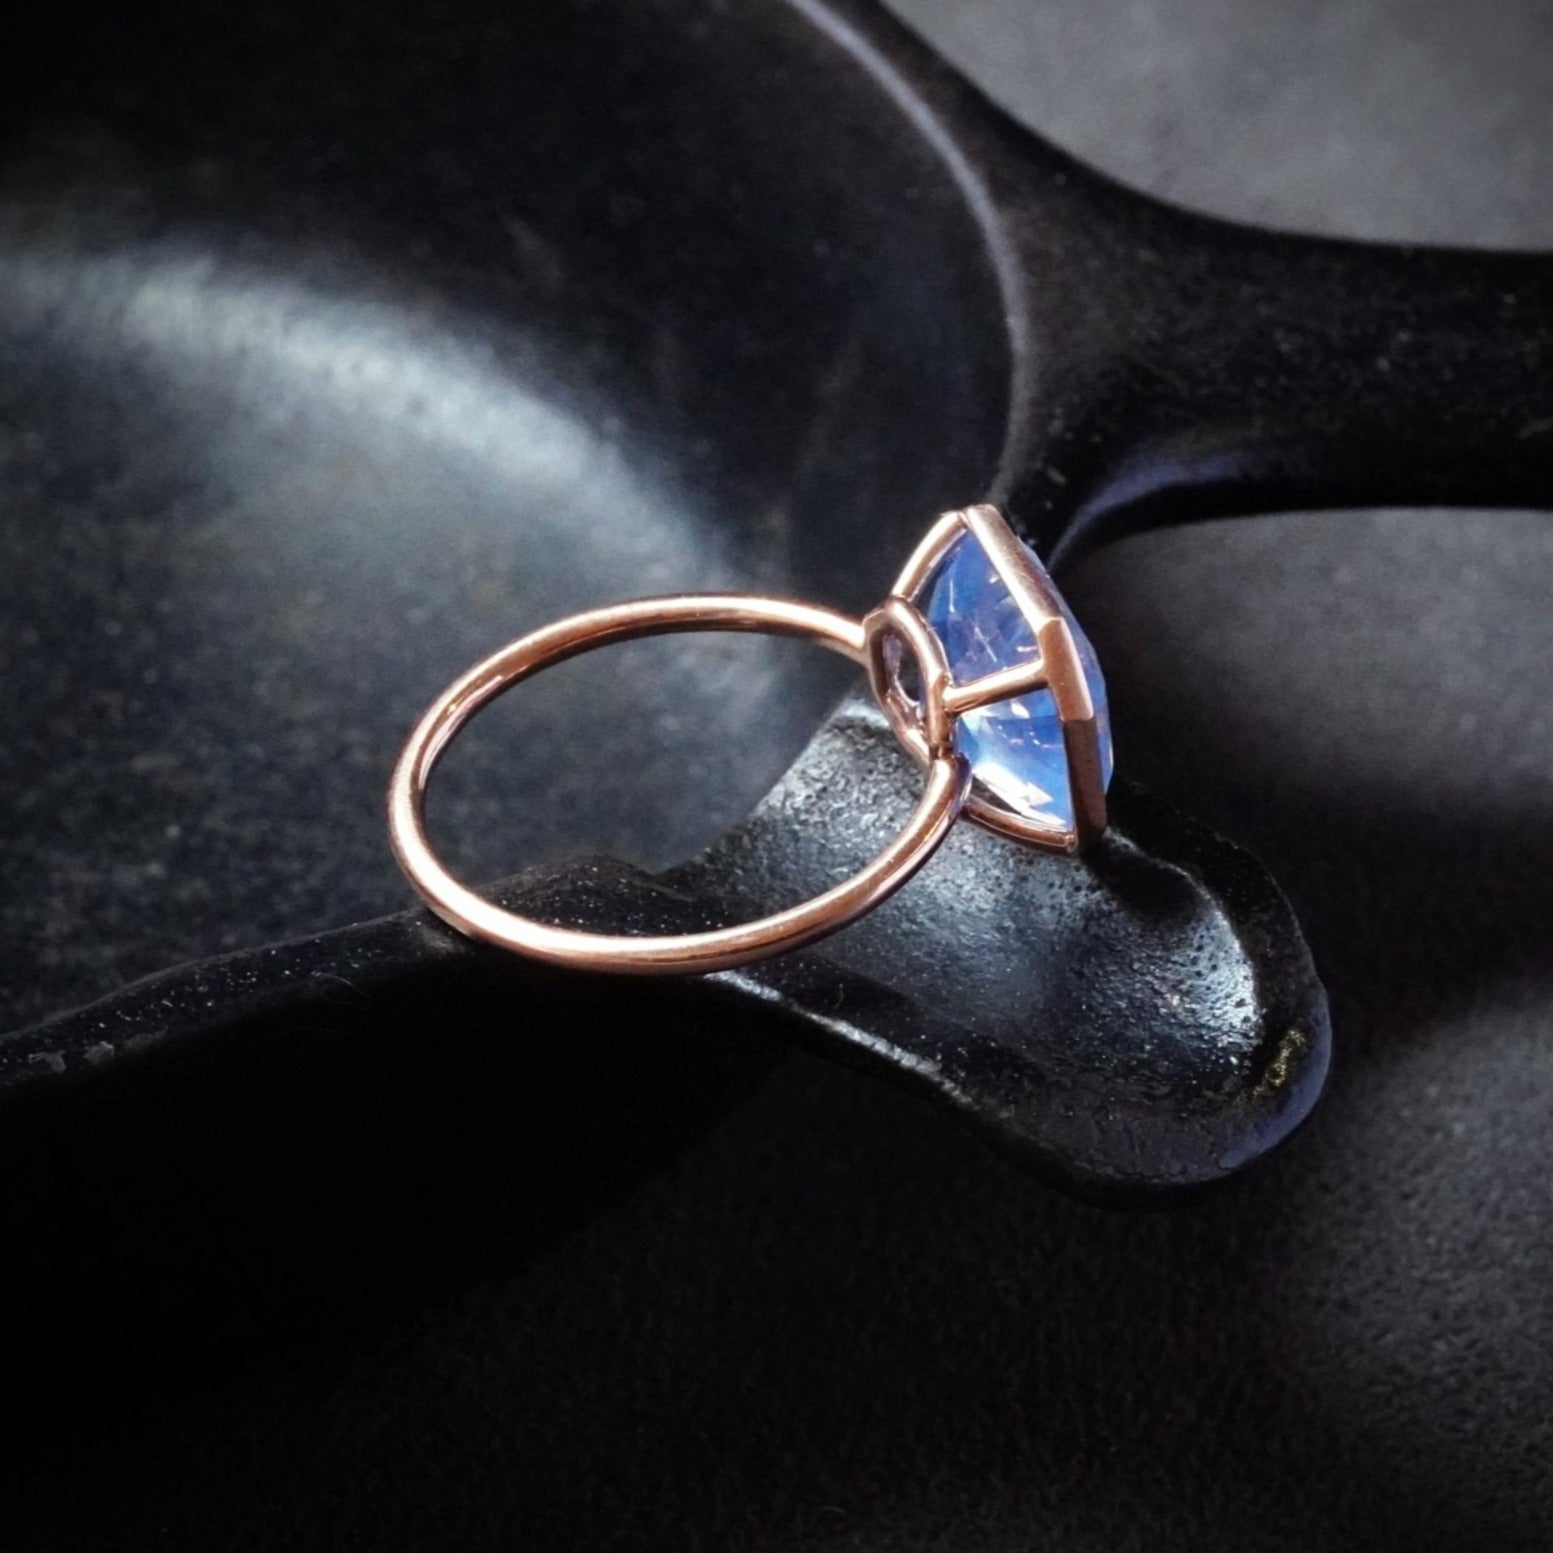 Asscher Cut Ceylon Sapphire Ring, 5.31 ct